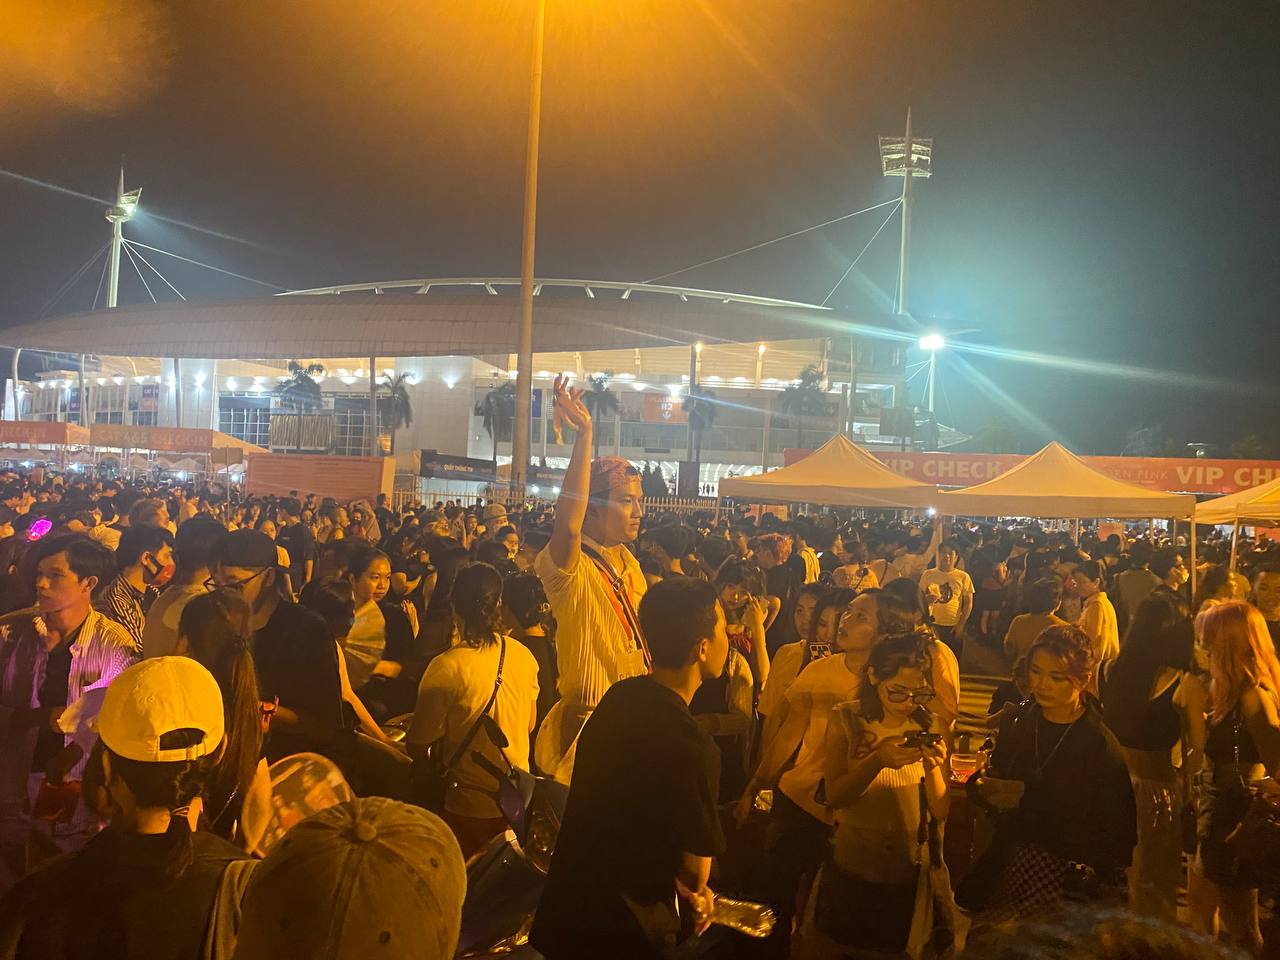 Các gia đình đến ủng hộ đêm diễn cuối cùng của BLACKPINK tại Hà Nội, nhiều người chấp nhận ôm vé vì không muốn bị ép giá - Ảnh 2.